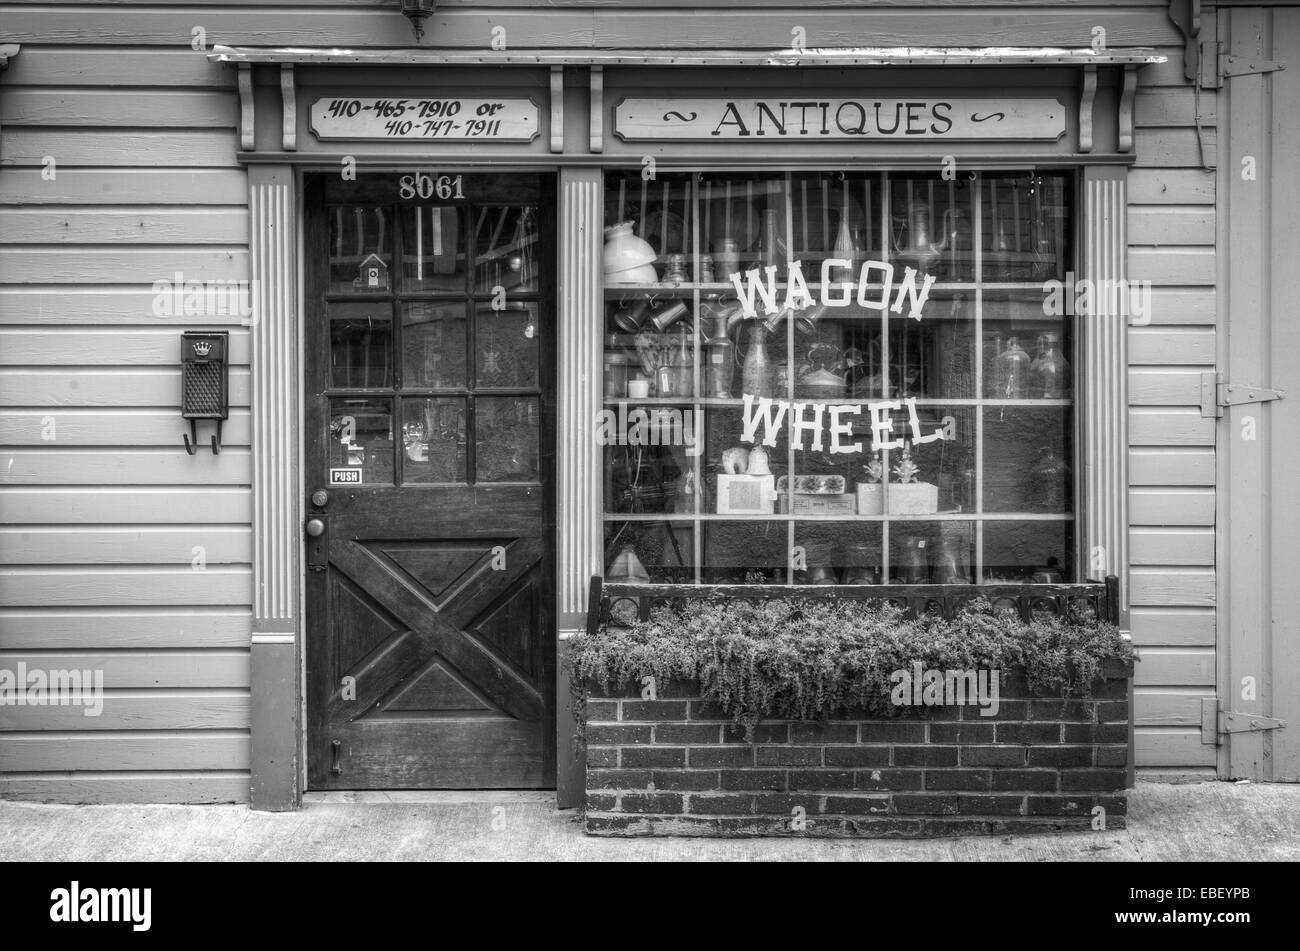 El Wagon Wheel tienda de antigüedades en Ellicott City, MD Foto de stock